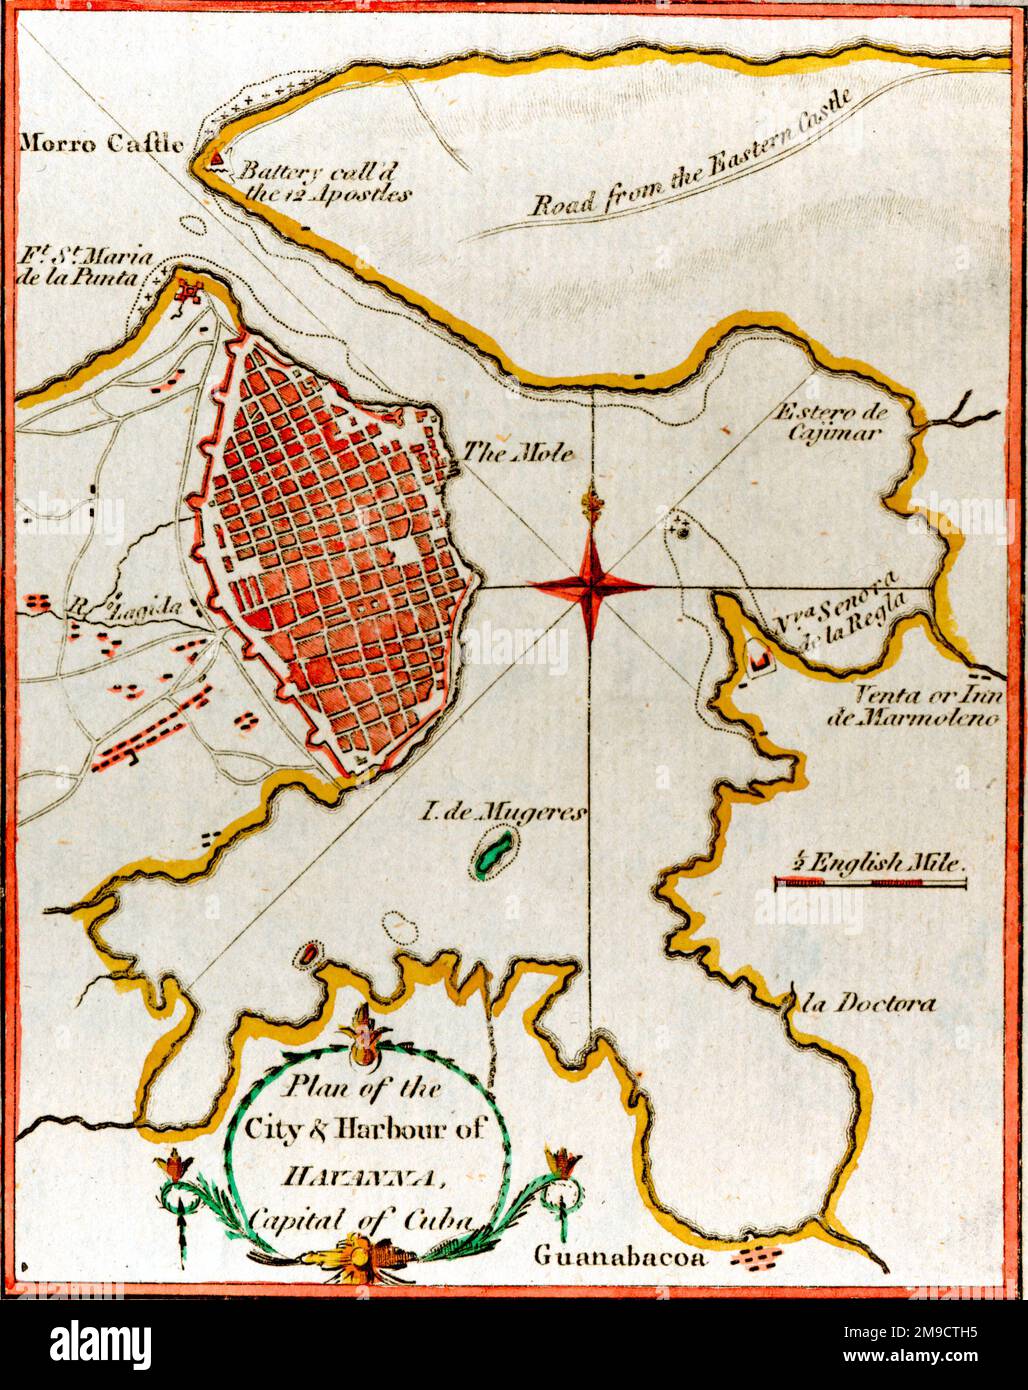 Mappa del 19th ° secolo del Porto di l'Avana, Cuba Foto Stock